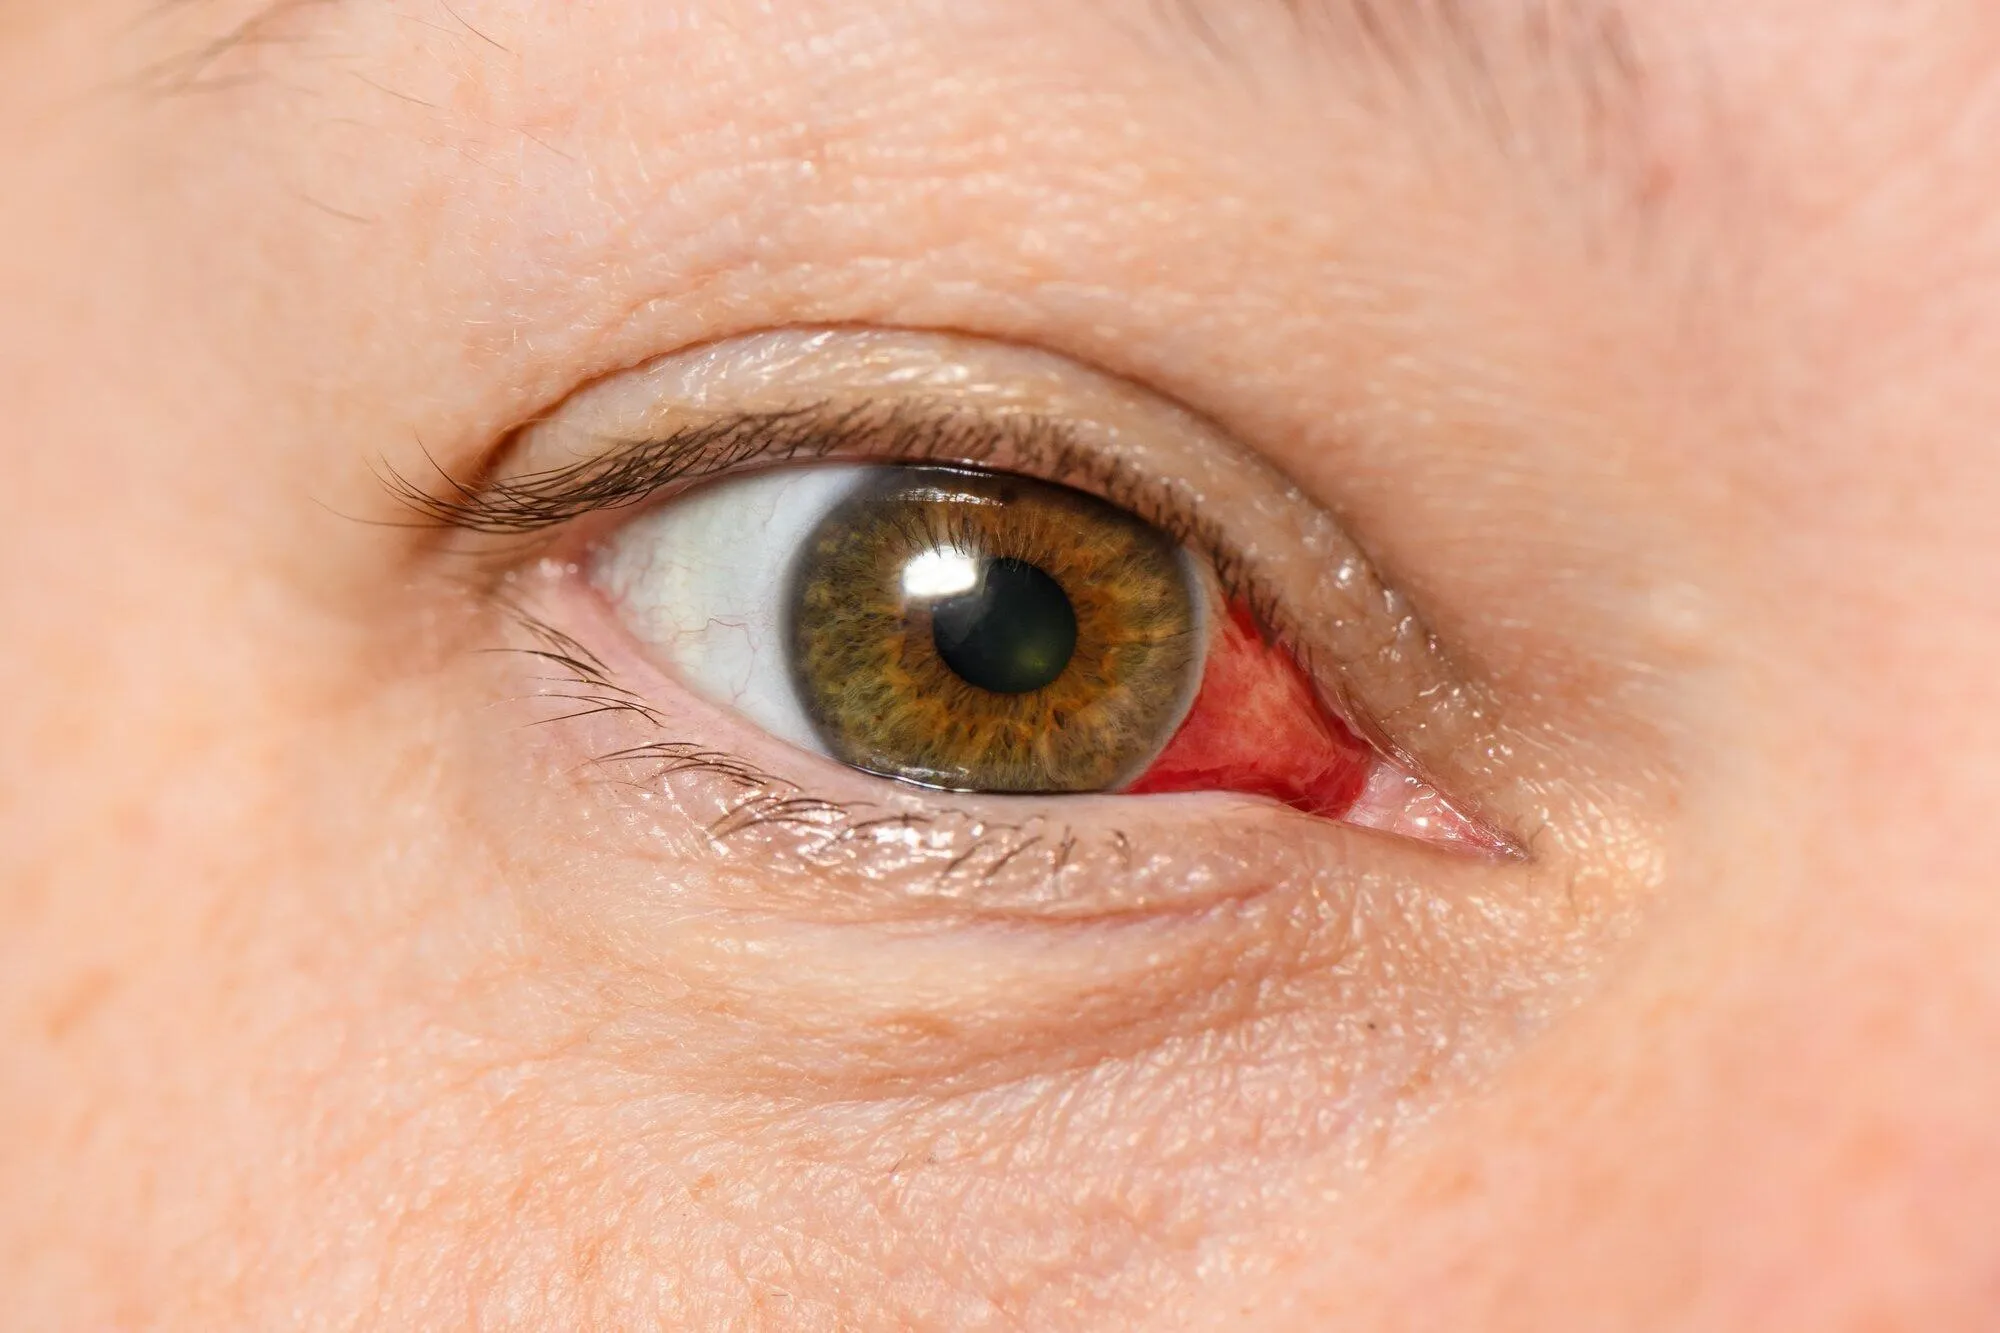 corneal abrasion vs ulcer